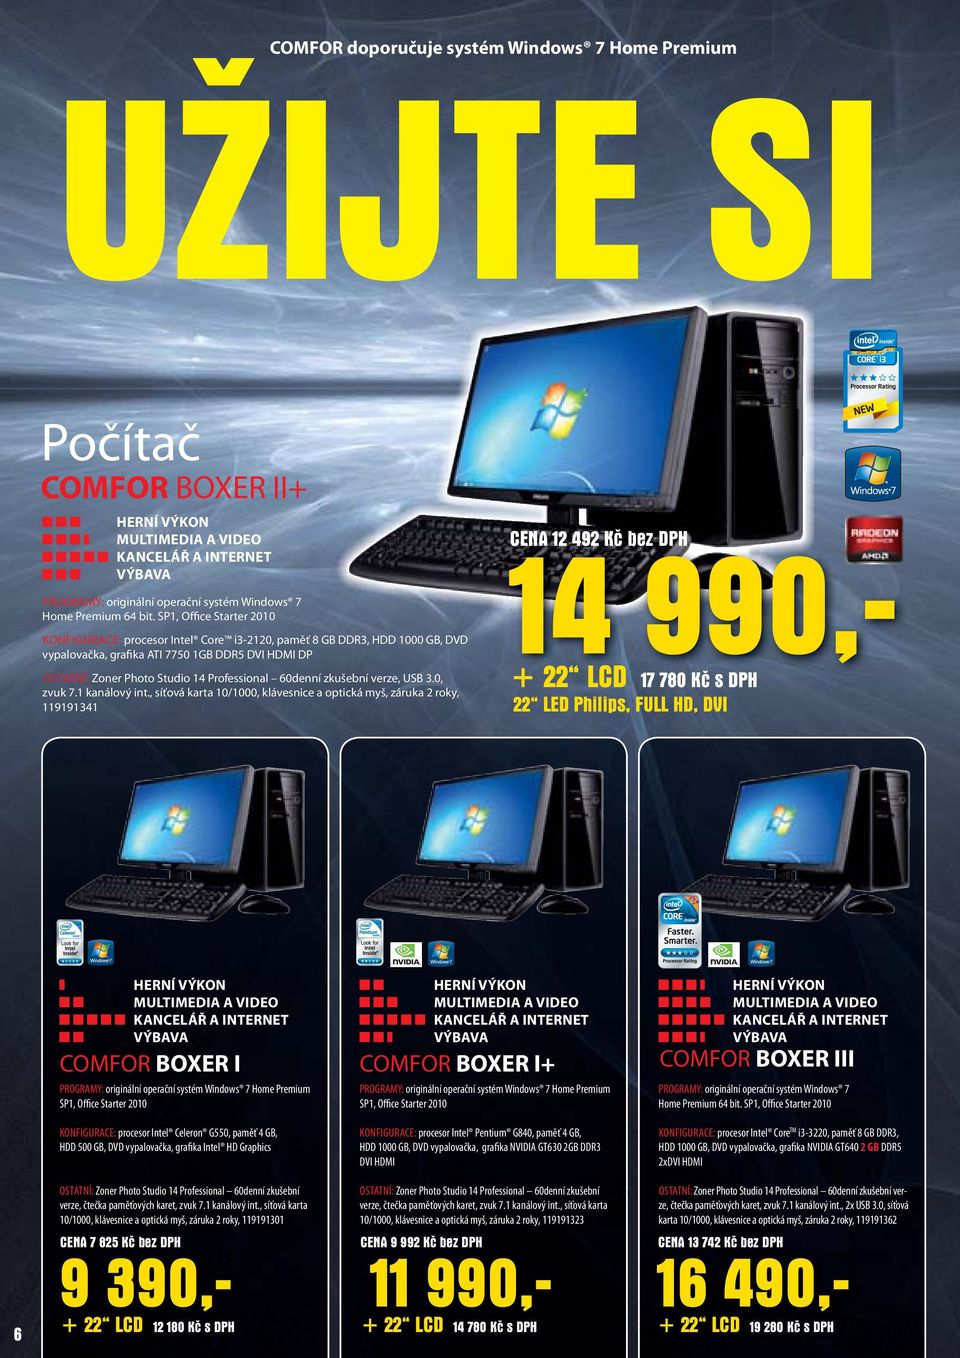 SP1, Office Starter 2010 KONFIGURACE: procesor Intel Core i3-2120, paměť 8 GB DDR3, HDD 1000 GB, DVD vypalovačka, grafika ATI 7750 1GB DDR5 DVI HDMI DP OSTATNÍ: Zoner Photo Studio 14 Professional